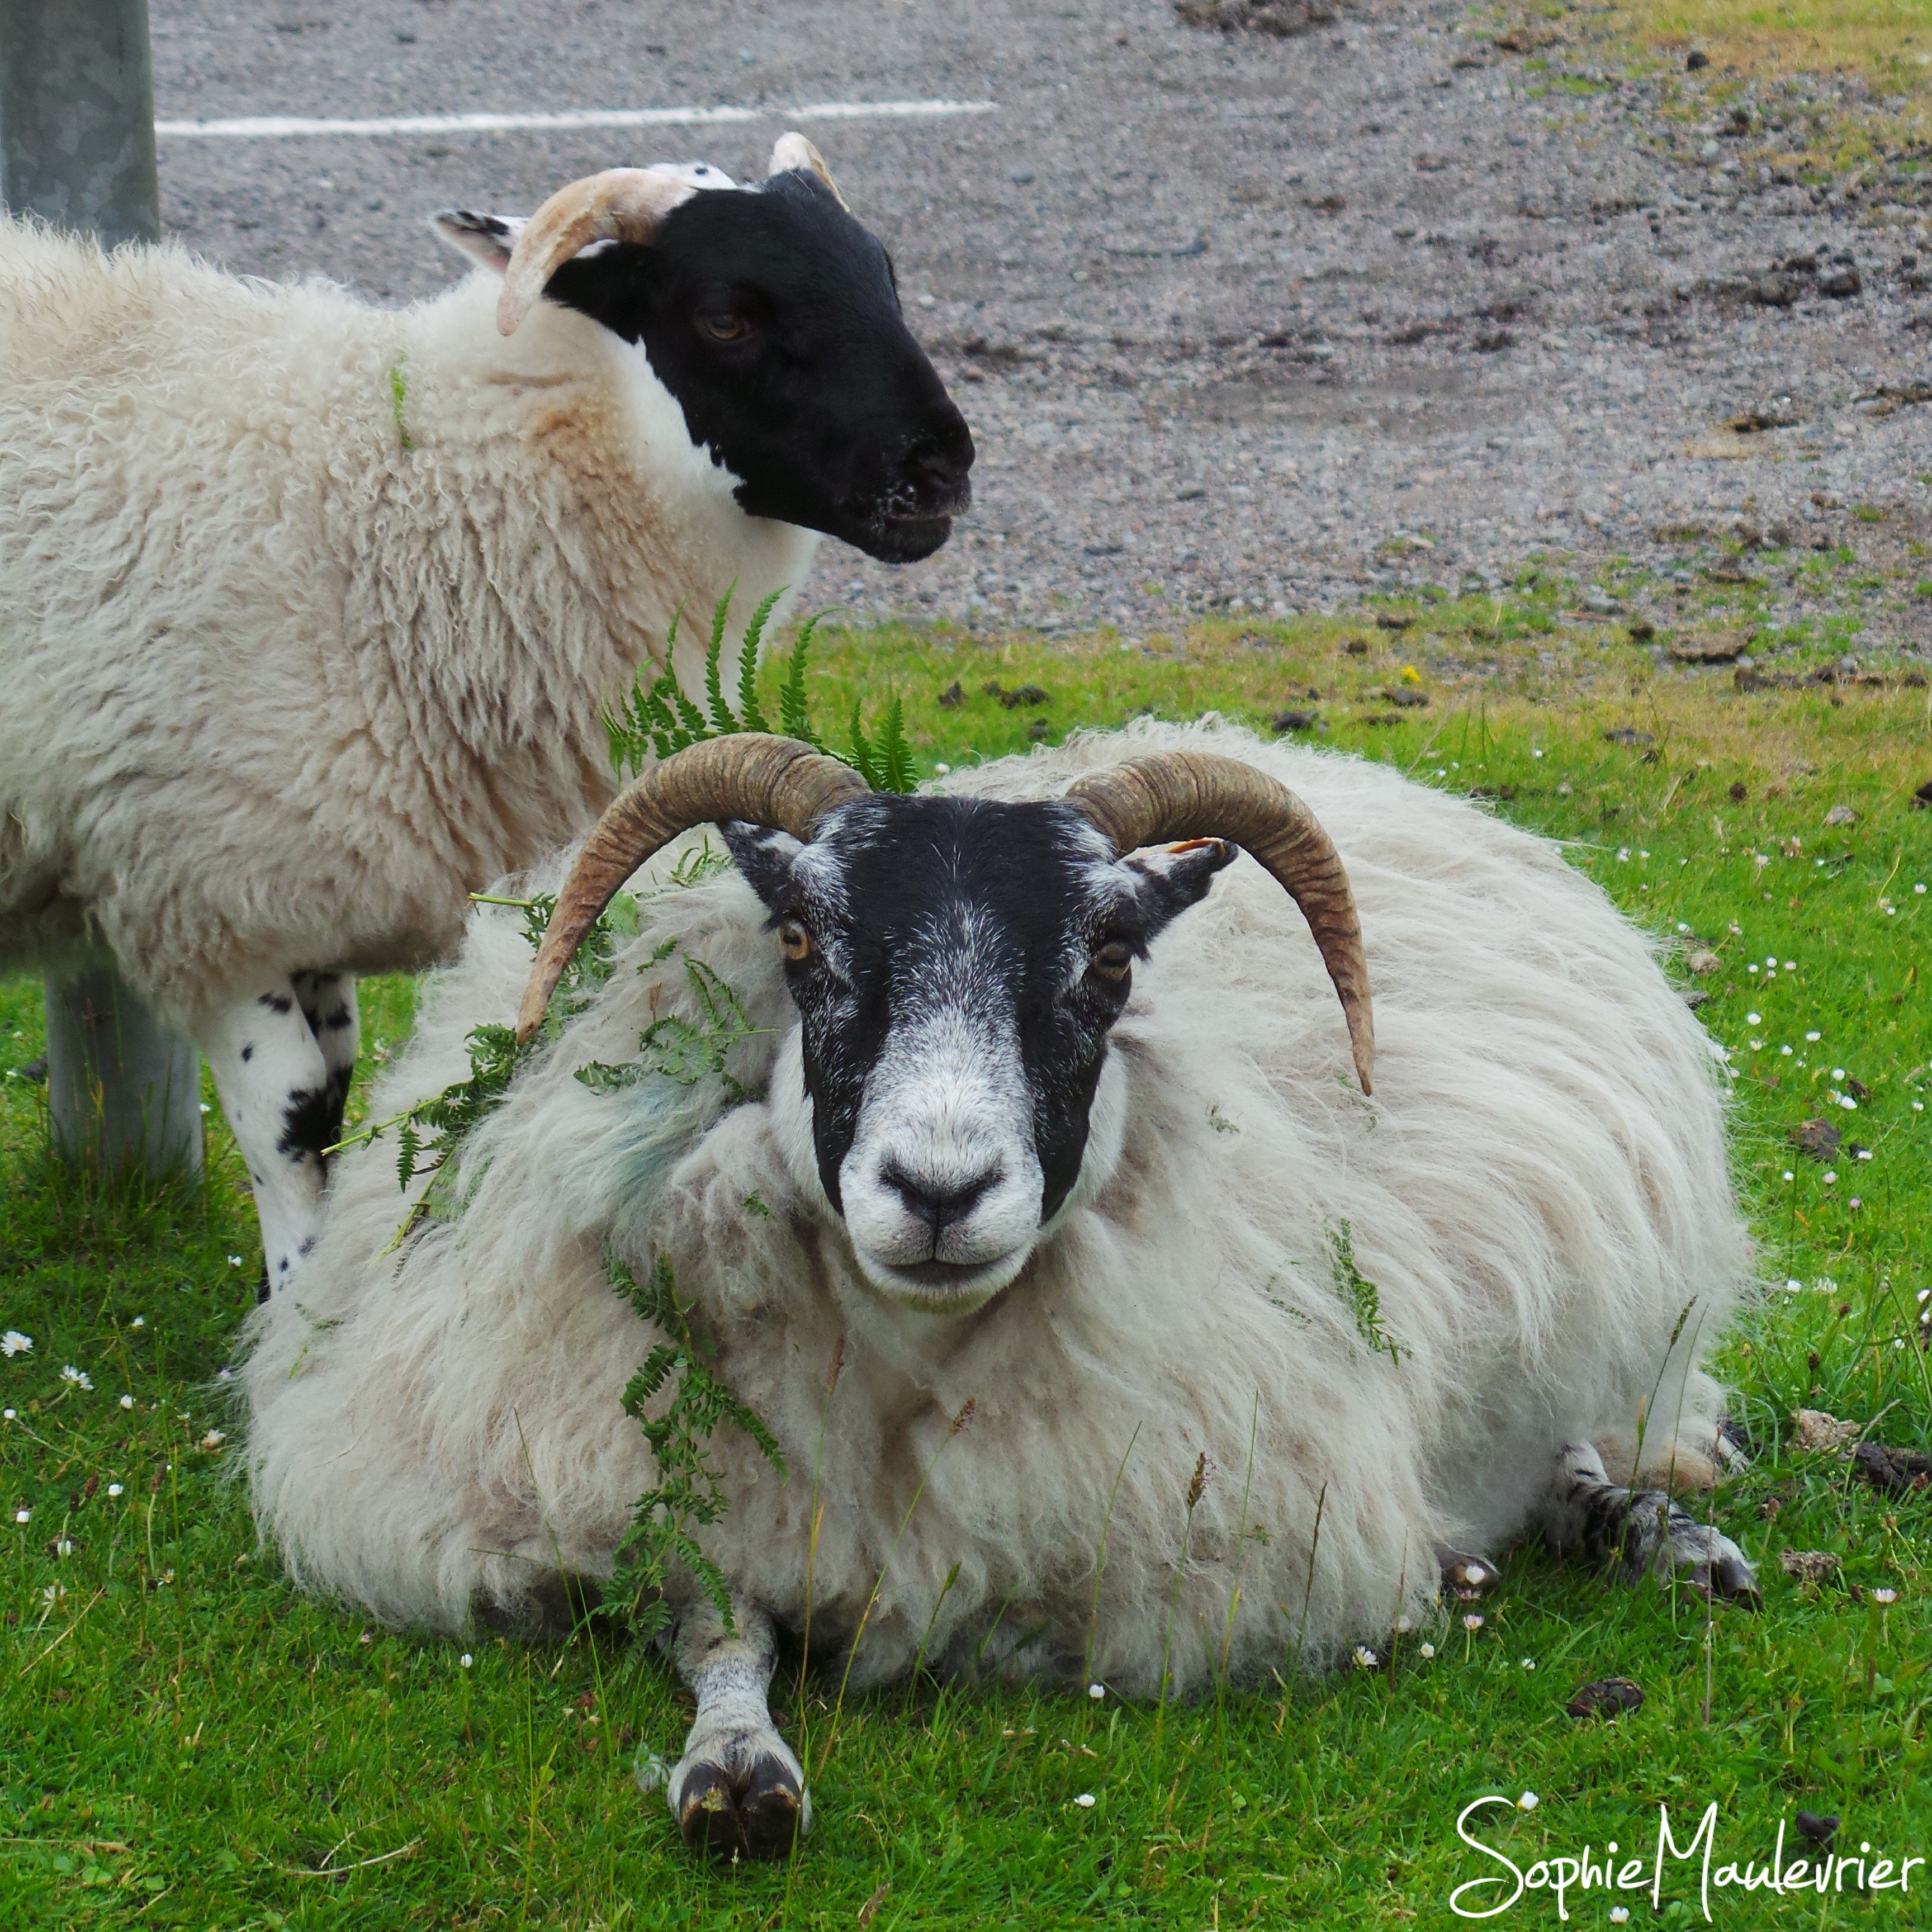 Les moutons de l'île de Mull rencontrés pendant notre road trip en Ecosse